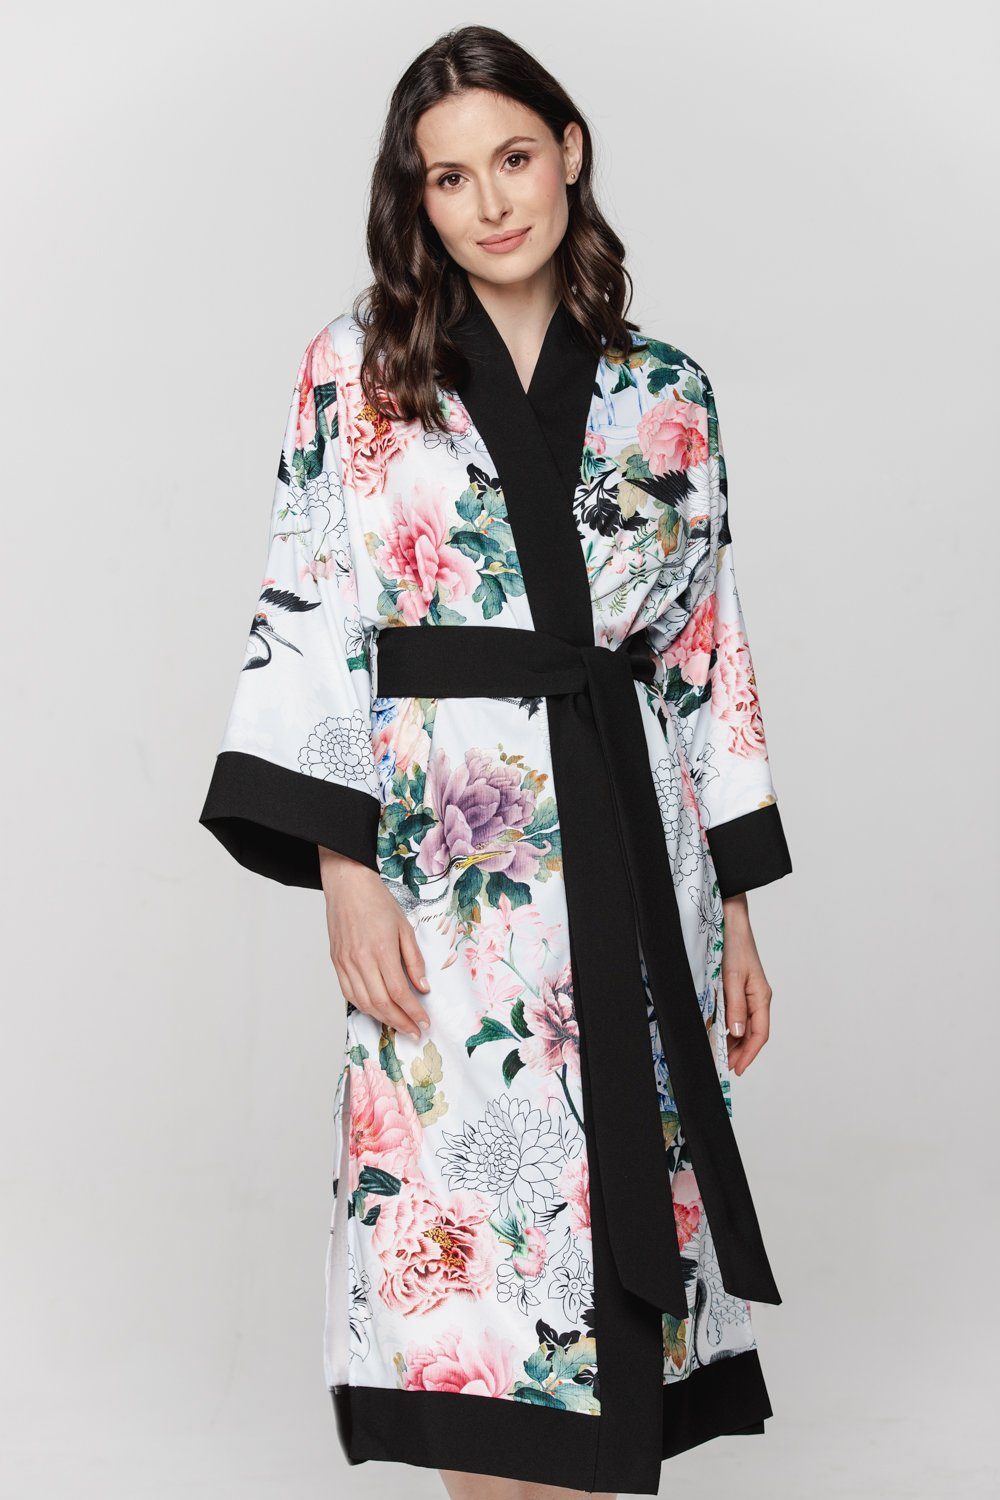 Kimono Hausmantel Damen Kimono Morgenrock BABEES Strandkleid Orient Bademantel